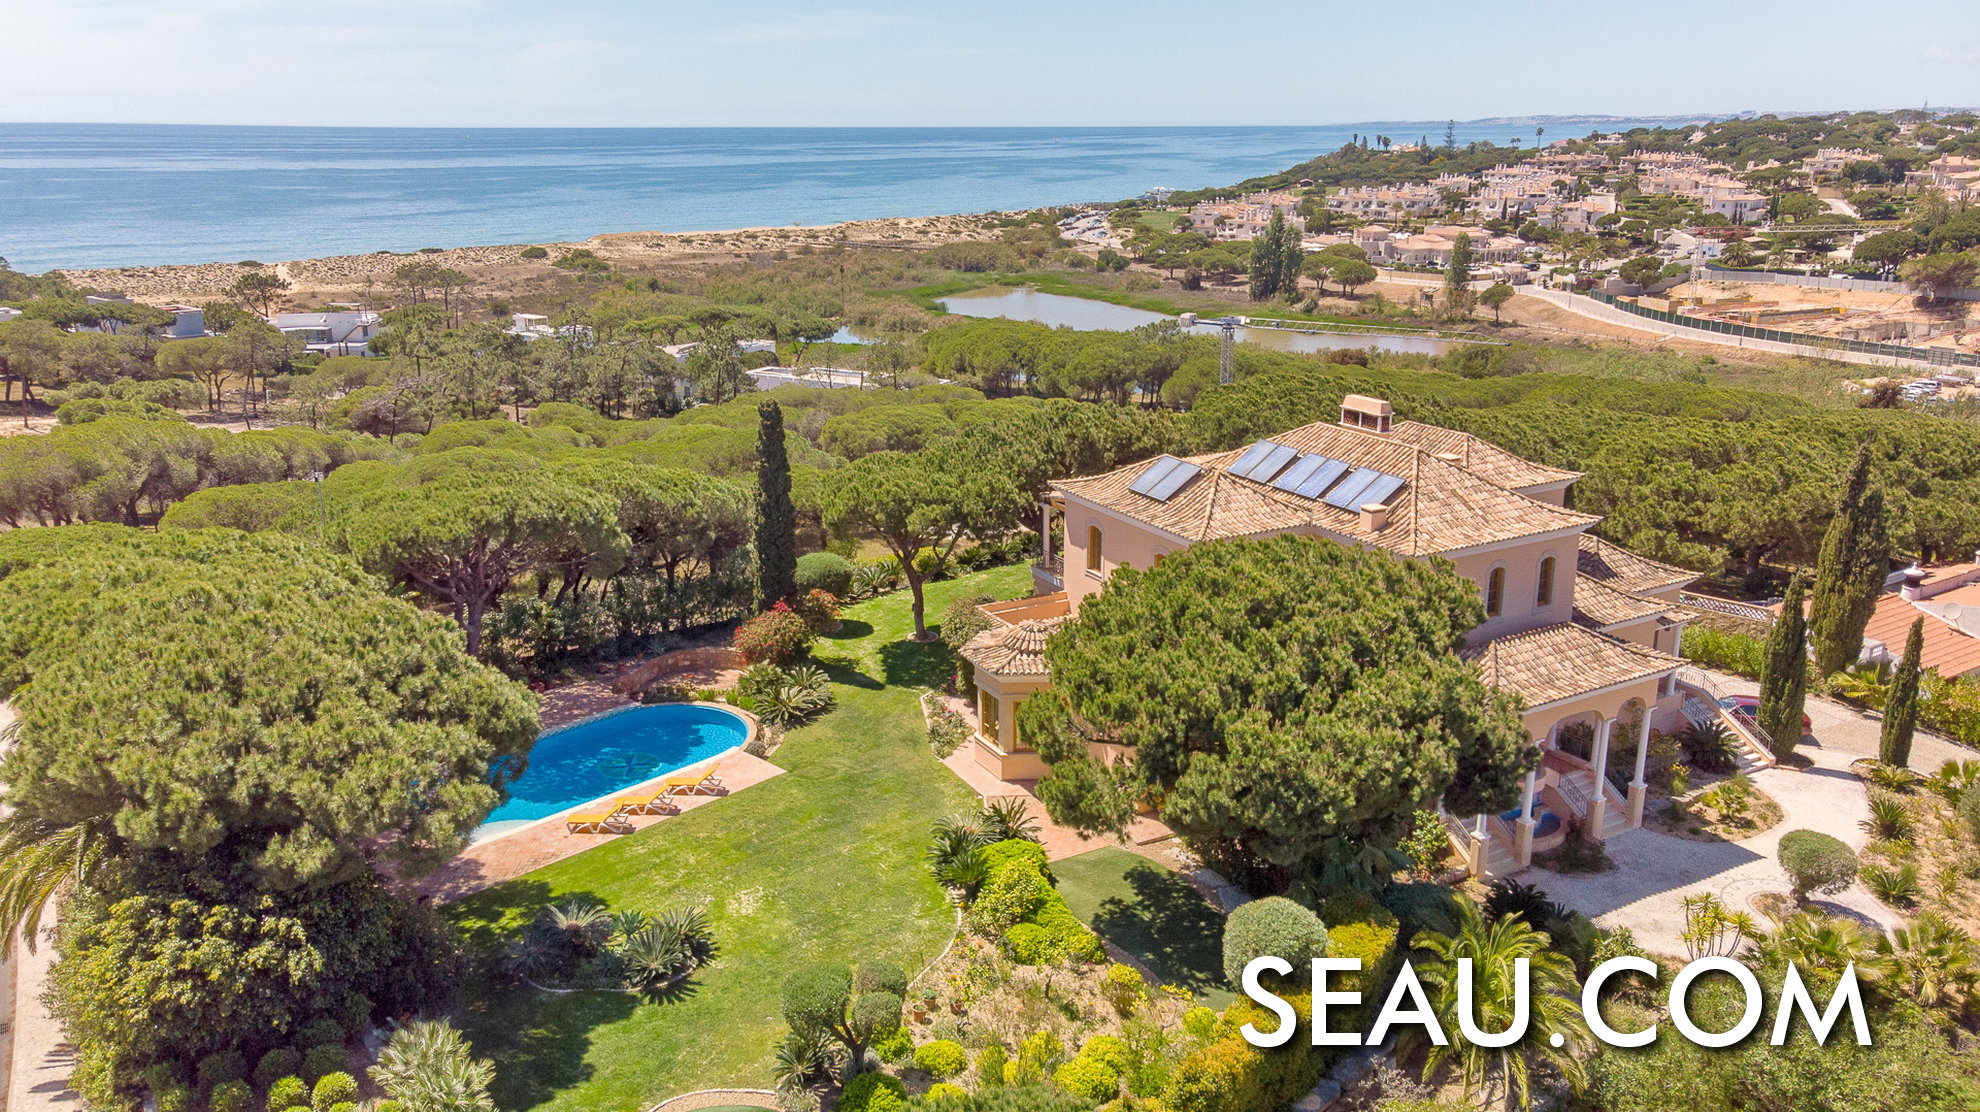 Espectacular ubicación para vivir en Portugal, una villa con vistas al mar, rodeada de naturaleza en la localidad de Vale do Lobo, Algarve